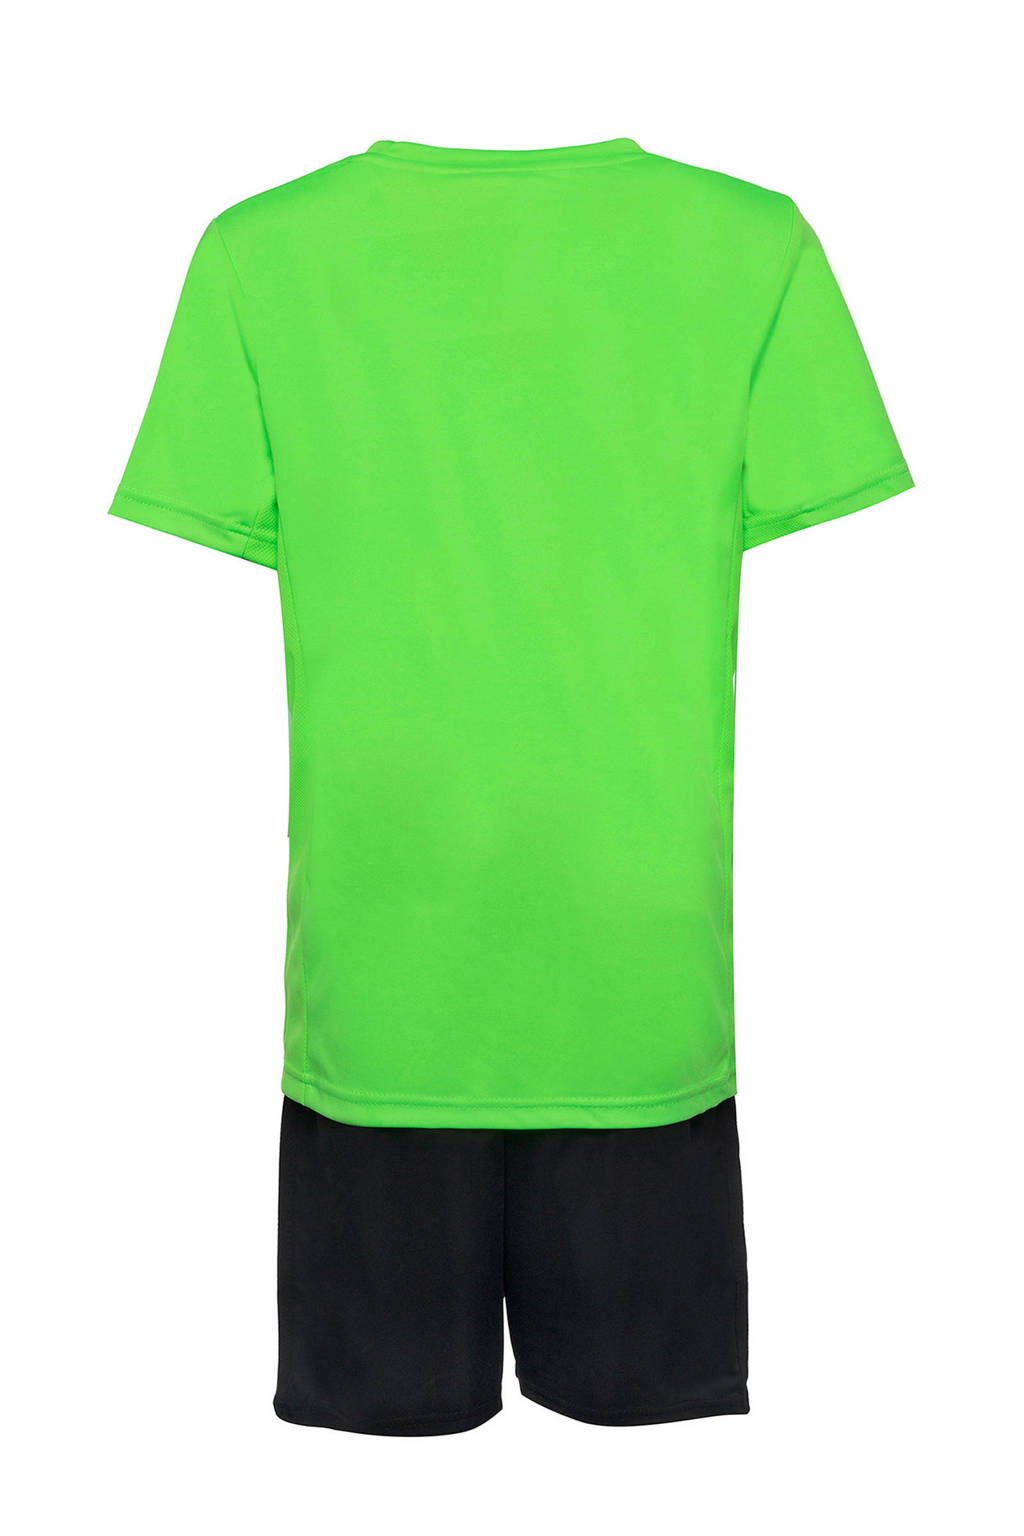 Groen en zwarte jongens en meisjes Scapino Dutchy sportset van polyester met korte mouwen, ronde hals en elastische tailleband met koord